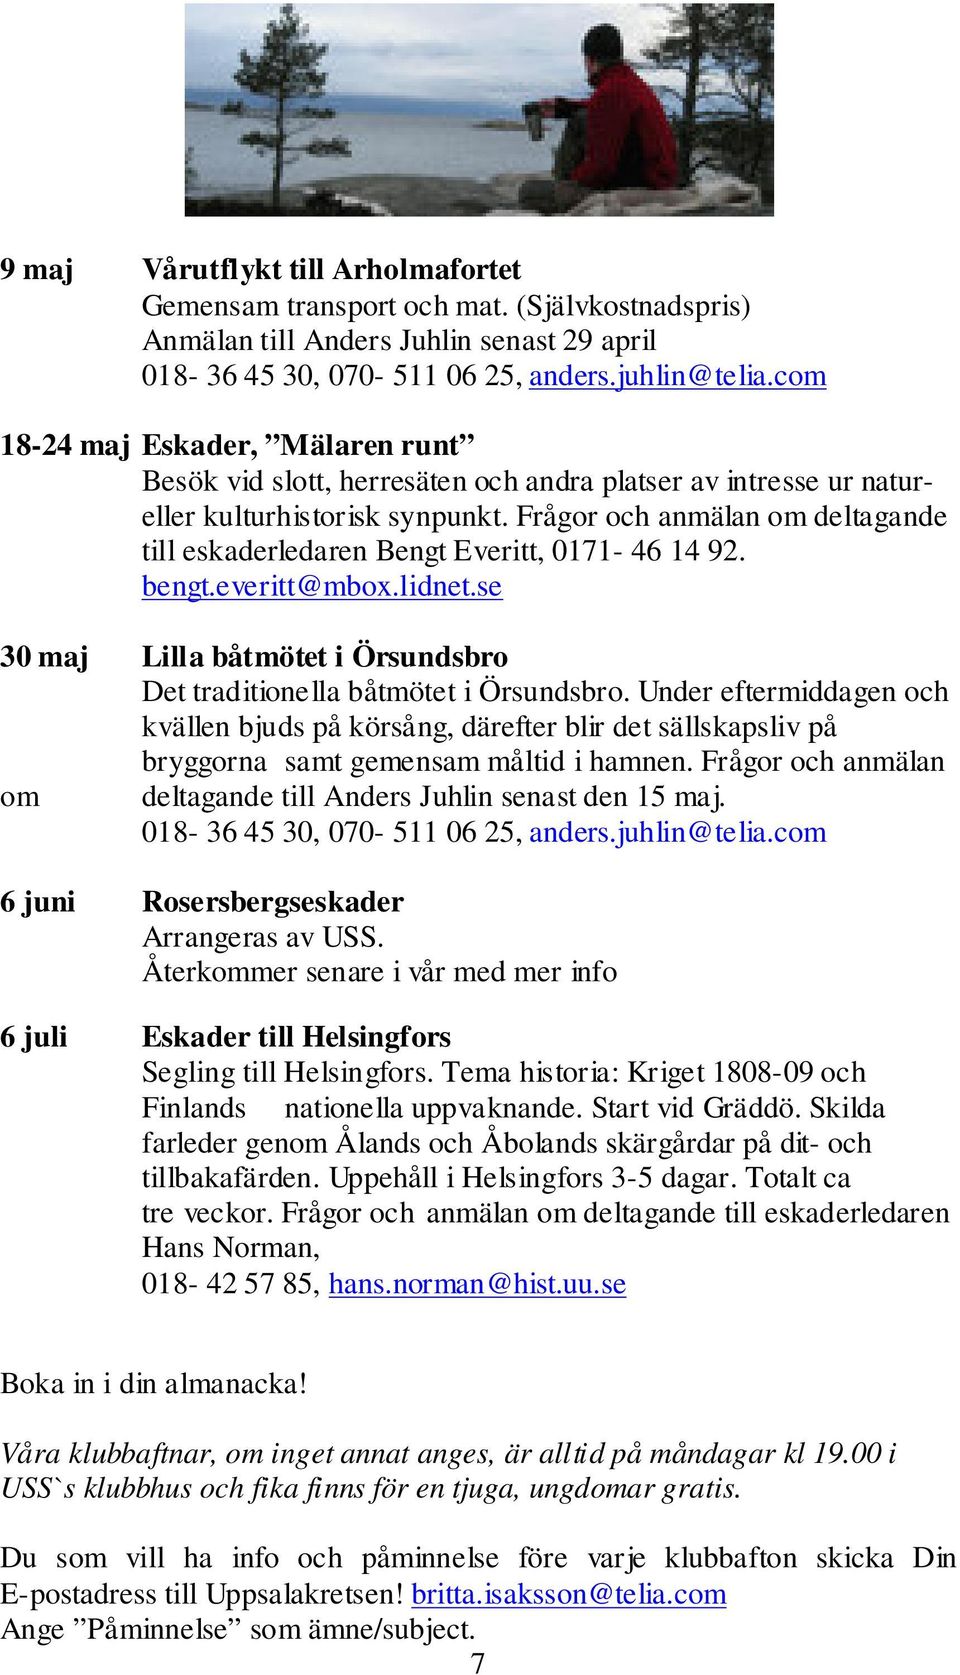 Frågor och anmälan om deltagande till eskaderledaren Bengt Everitt, 0171-46 14 92. bengt.everitt@mbox.lidnet.se 30 maj Lilla båtmötet i Örsundsbro Det traditionella båtmötet i Örsundsbro.